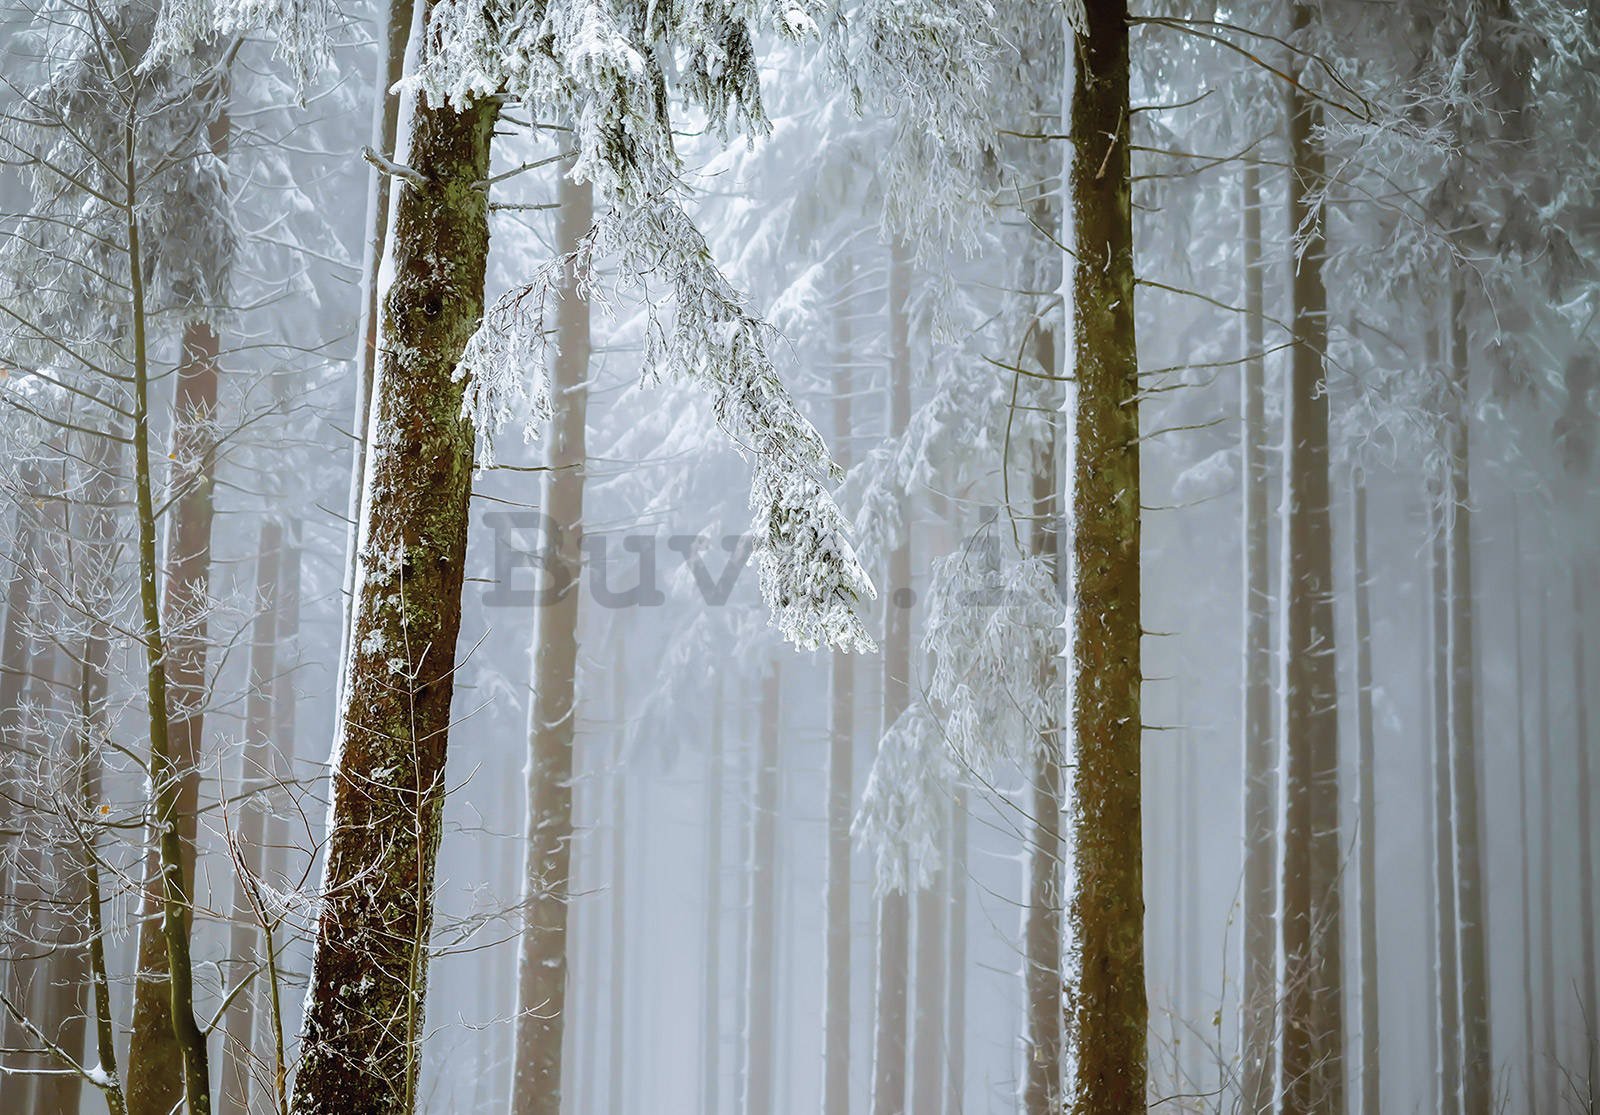 Fotomurale in TNT: Foresta di conifere coperta di neve - 368x254 cm